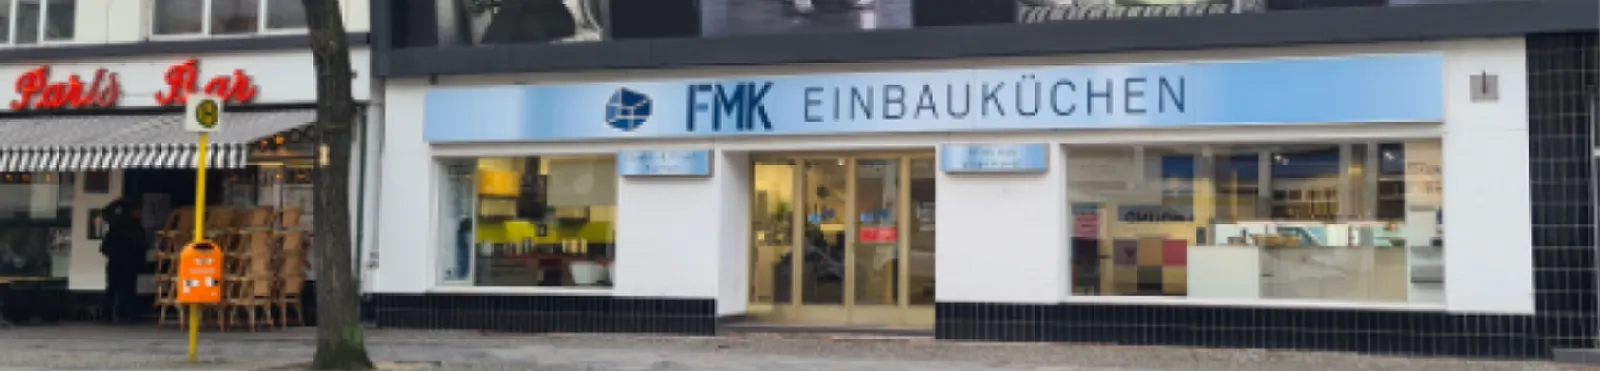 fmk-einbaukuechen-gmbh-1-top-banner